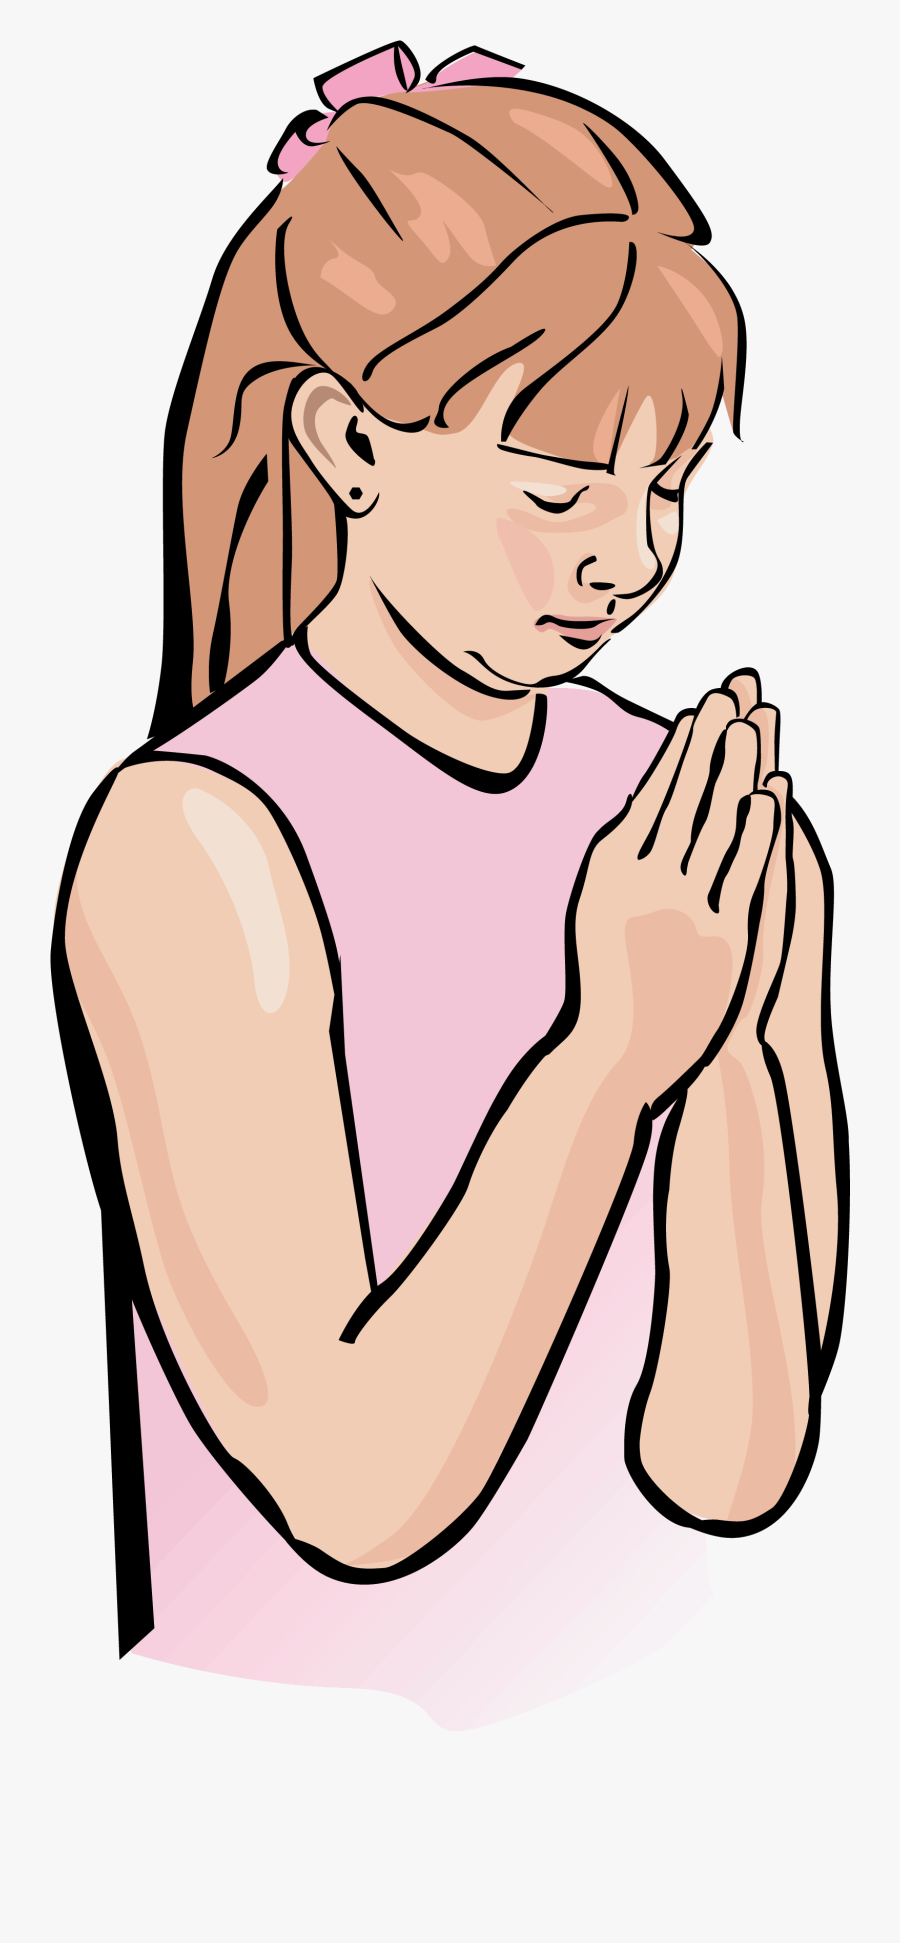 Prayer Clipart - Girl Praying Clipart, Transparent Clipart